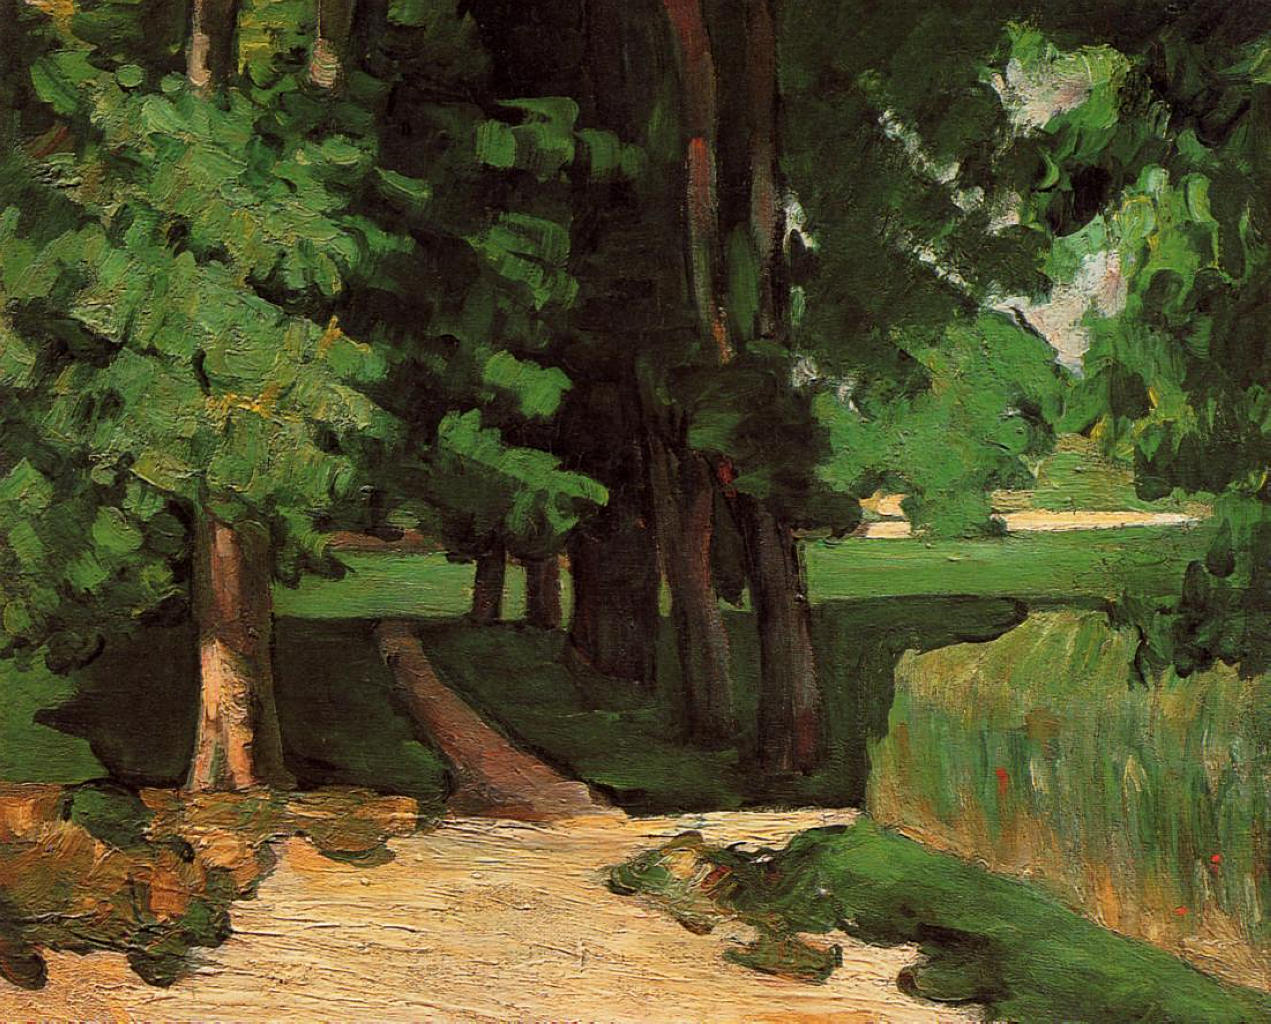 Paul Cezanne. Lane of Chestnut trees at the Jas de Bouffan. 1871